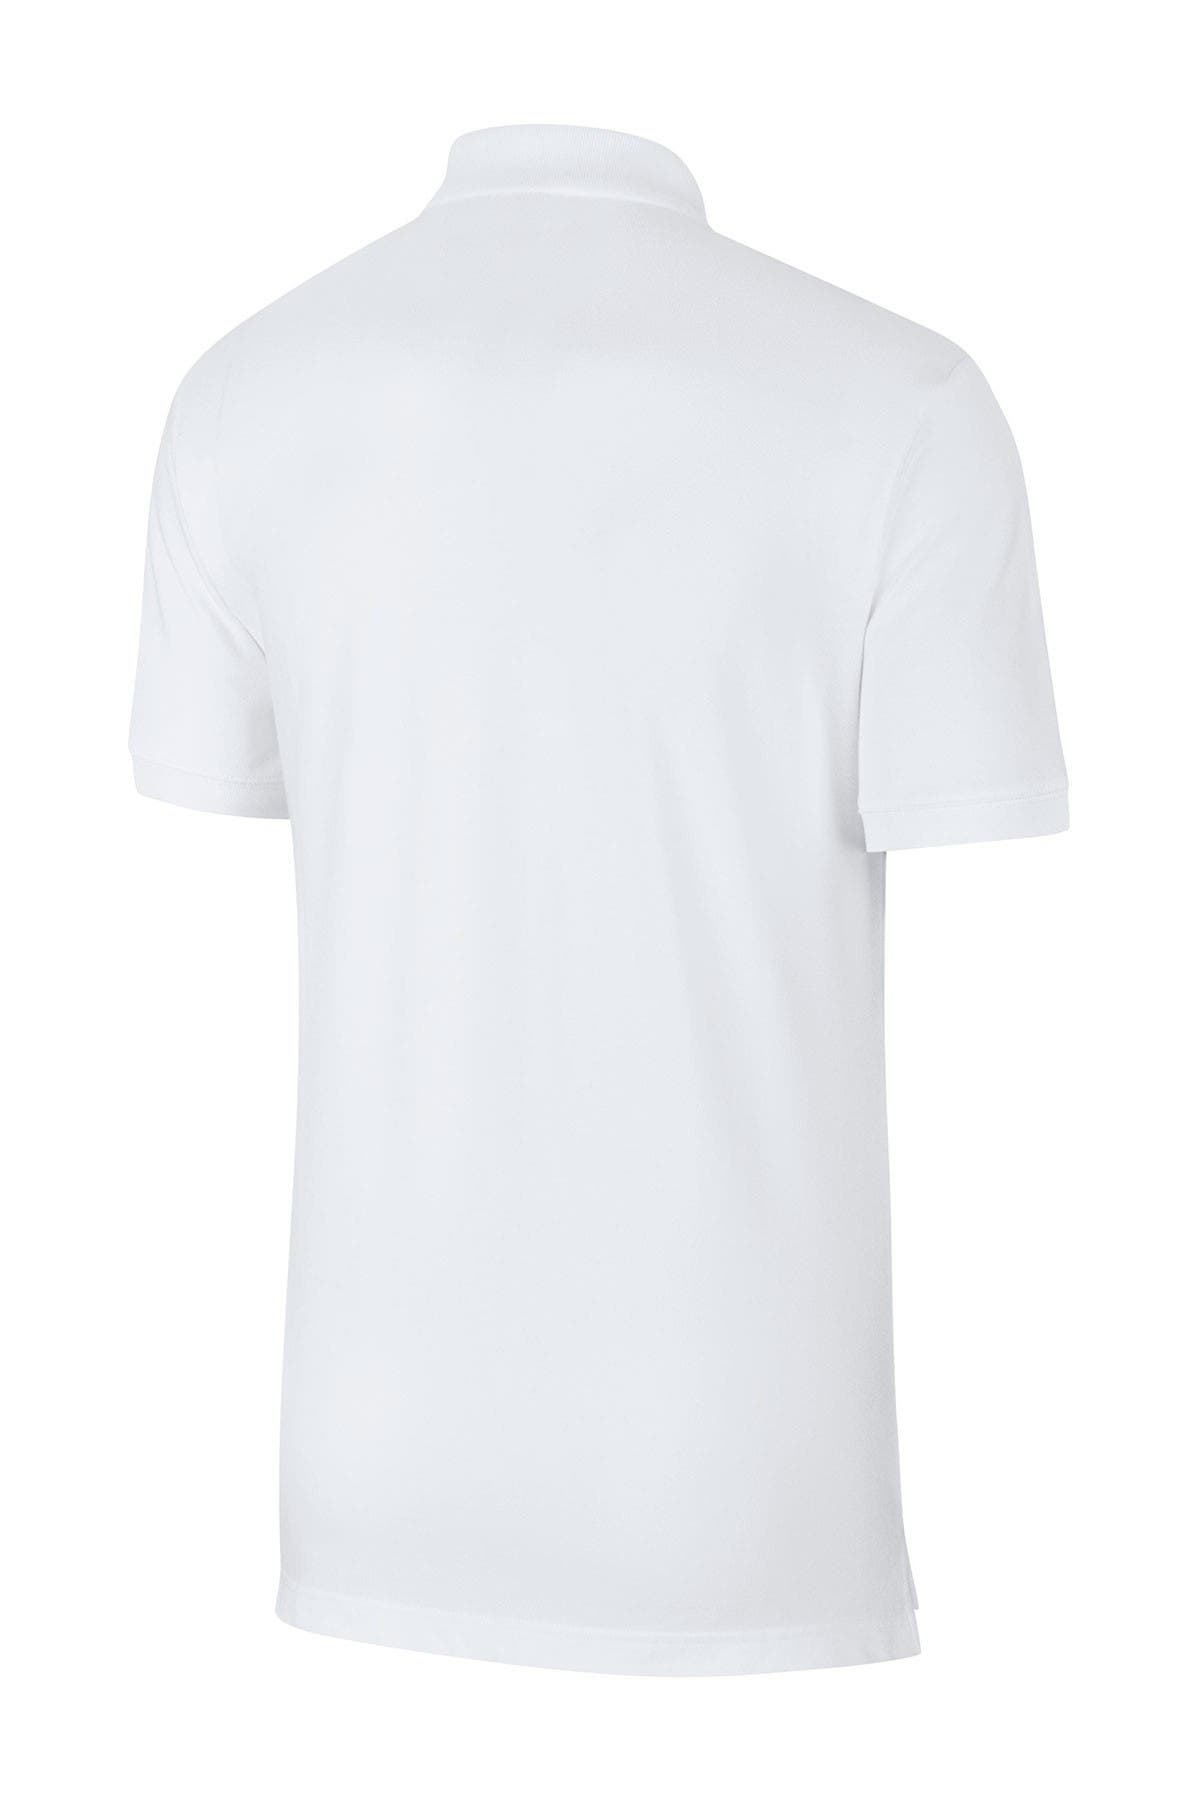 Vegas Golden Knights Levelwear Richmond Wordmark T-Shirt